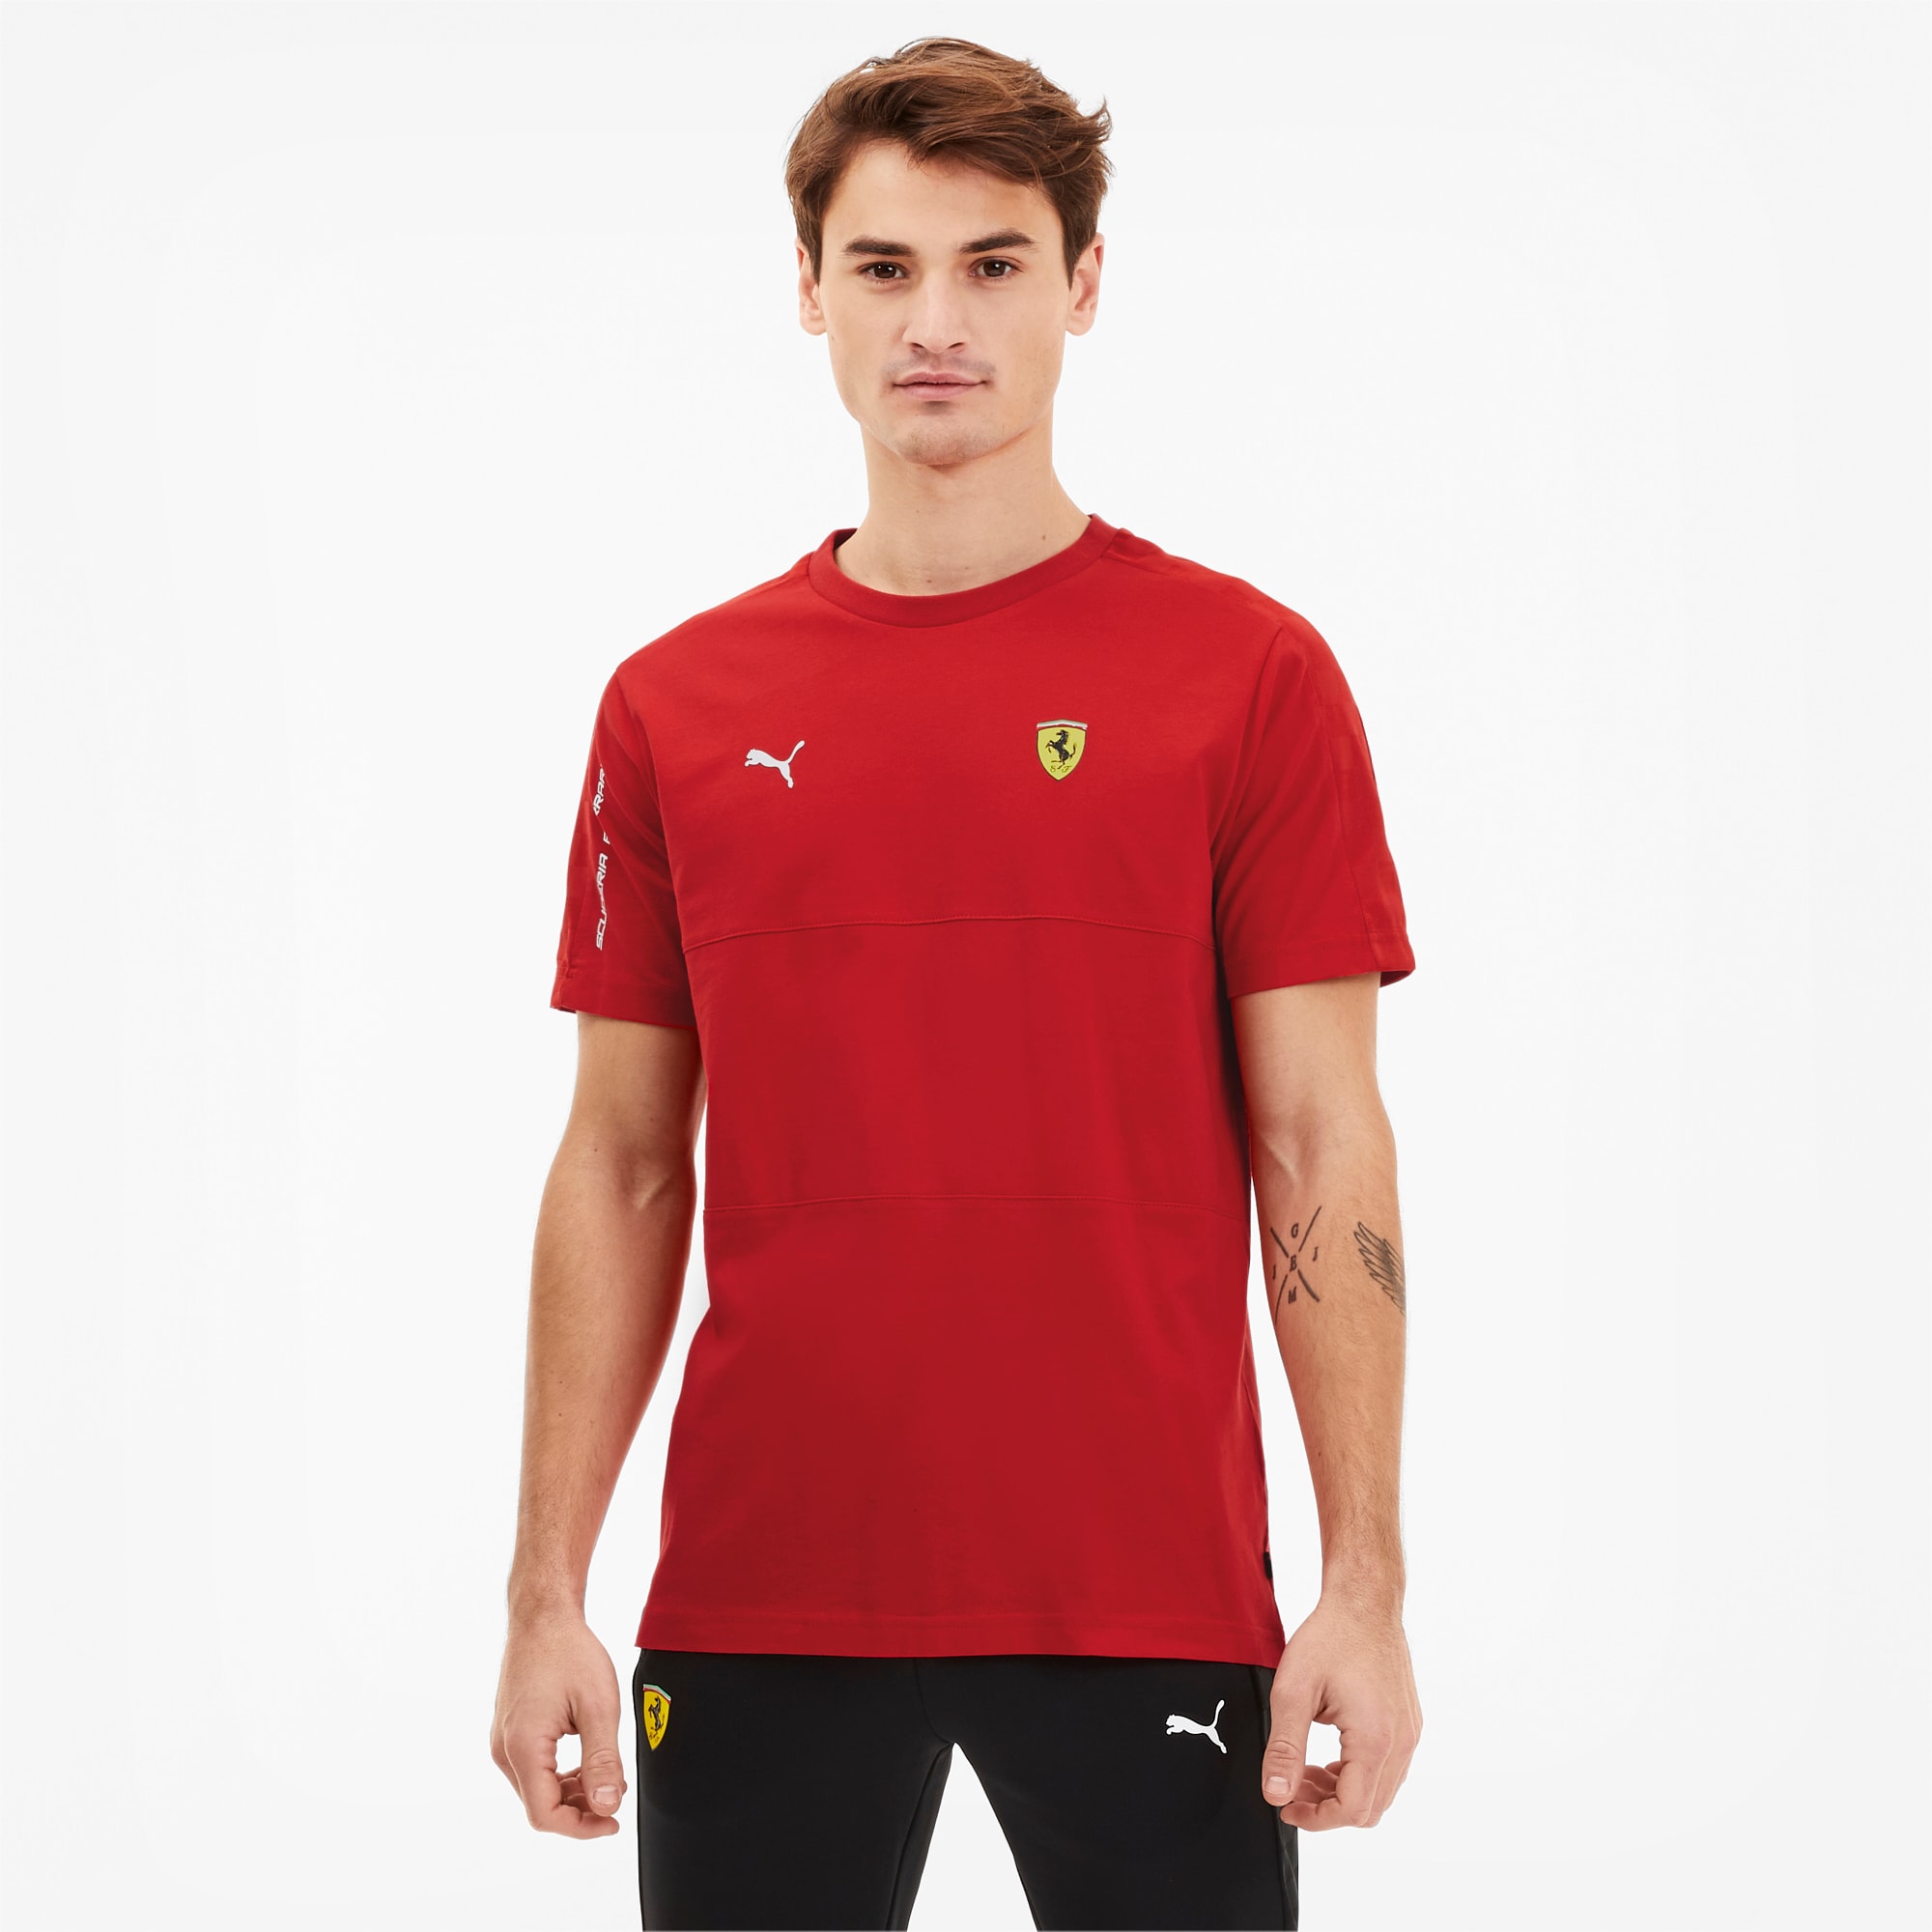 Ferrari T7 Herren T-Shirt | Rosso Corsa 